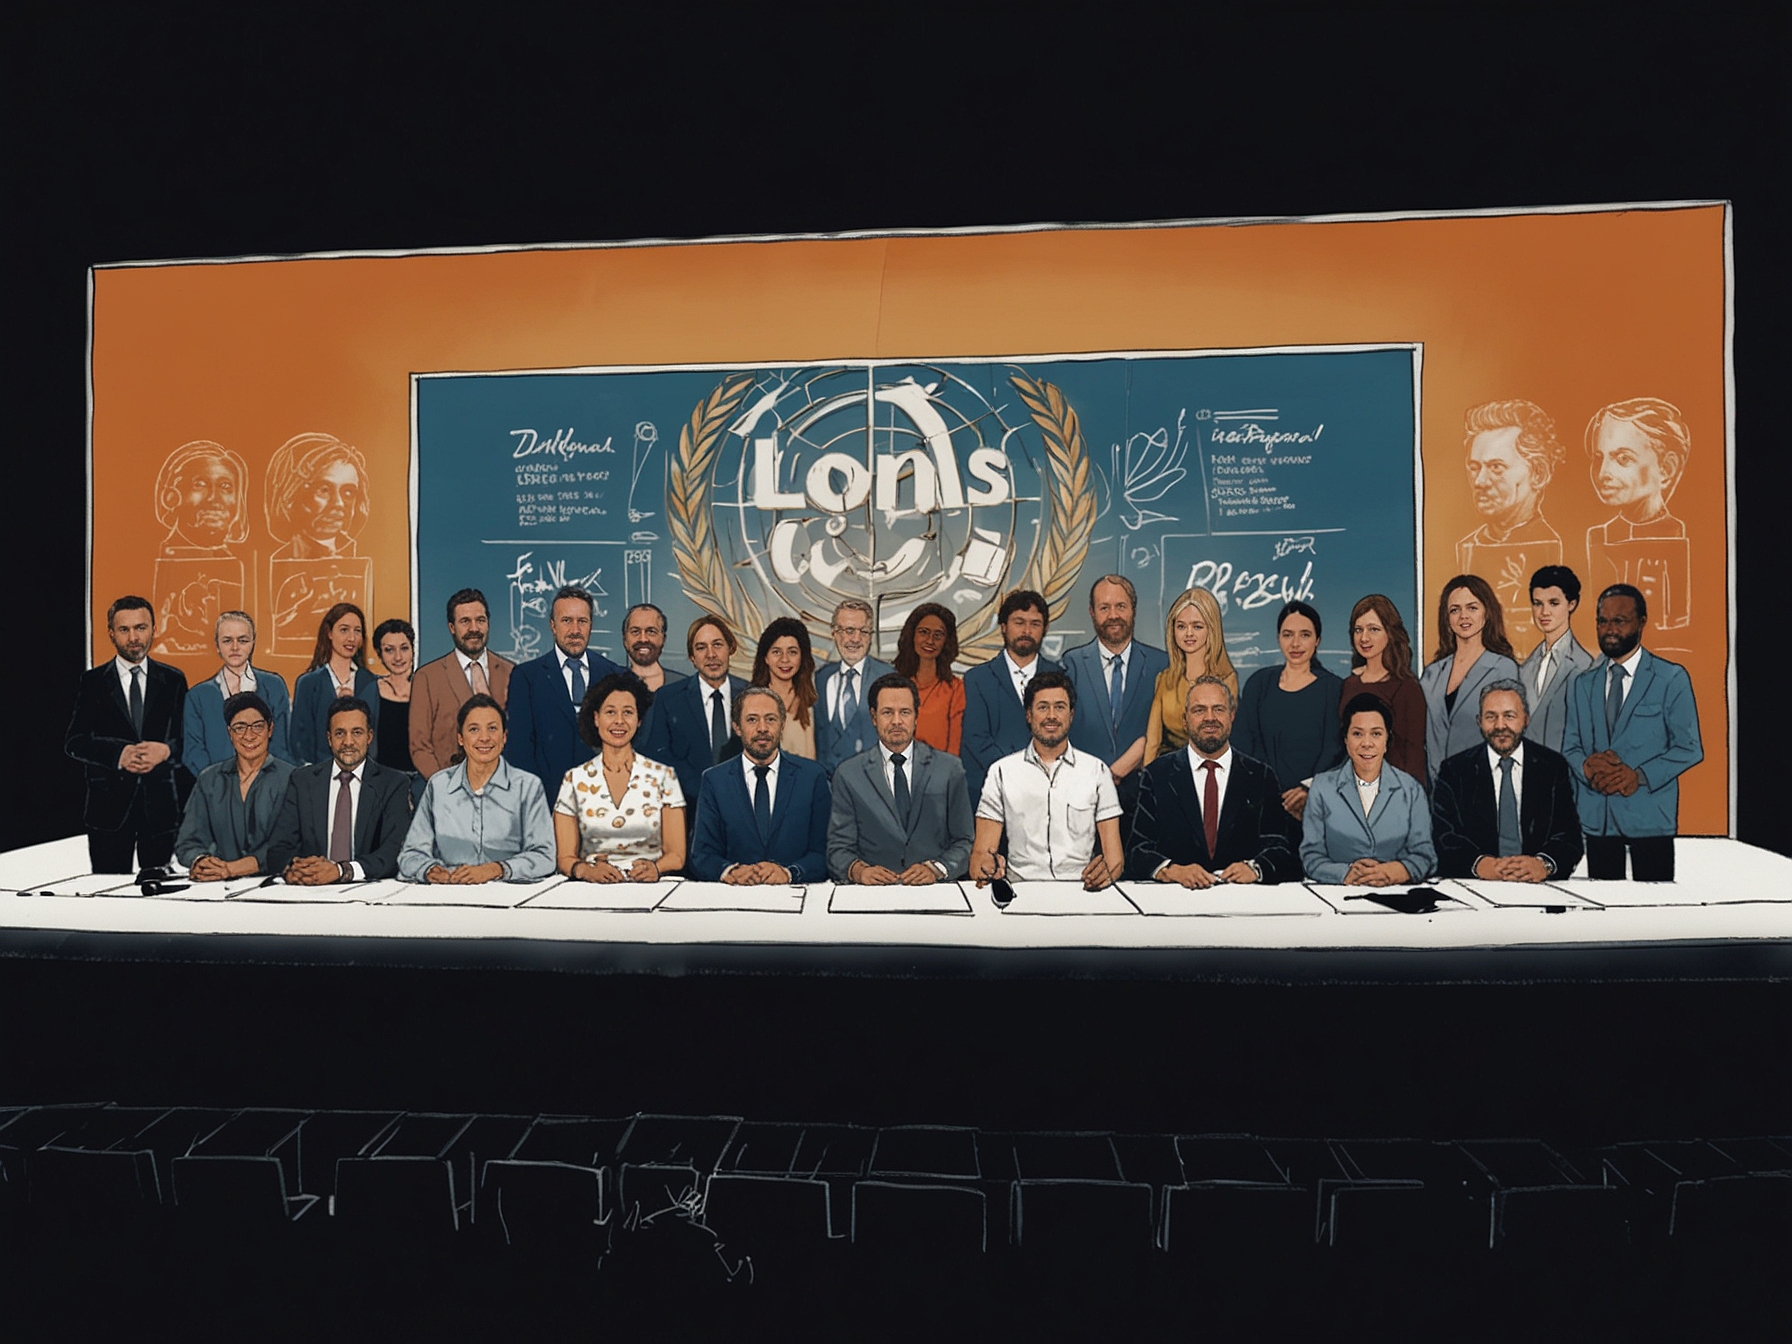 Un panel de la Fundación We Are All Human en Cannes Lions, donde profesionales latinos comparten sus experiencias y perspectivas, destacando la misión de inclusión y diversidad.